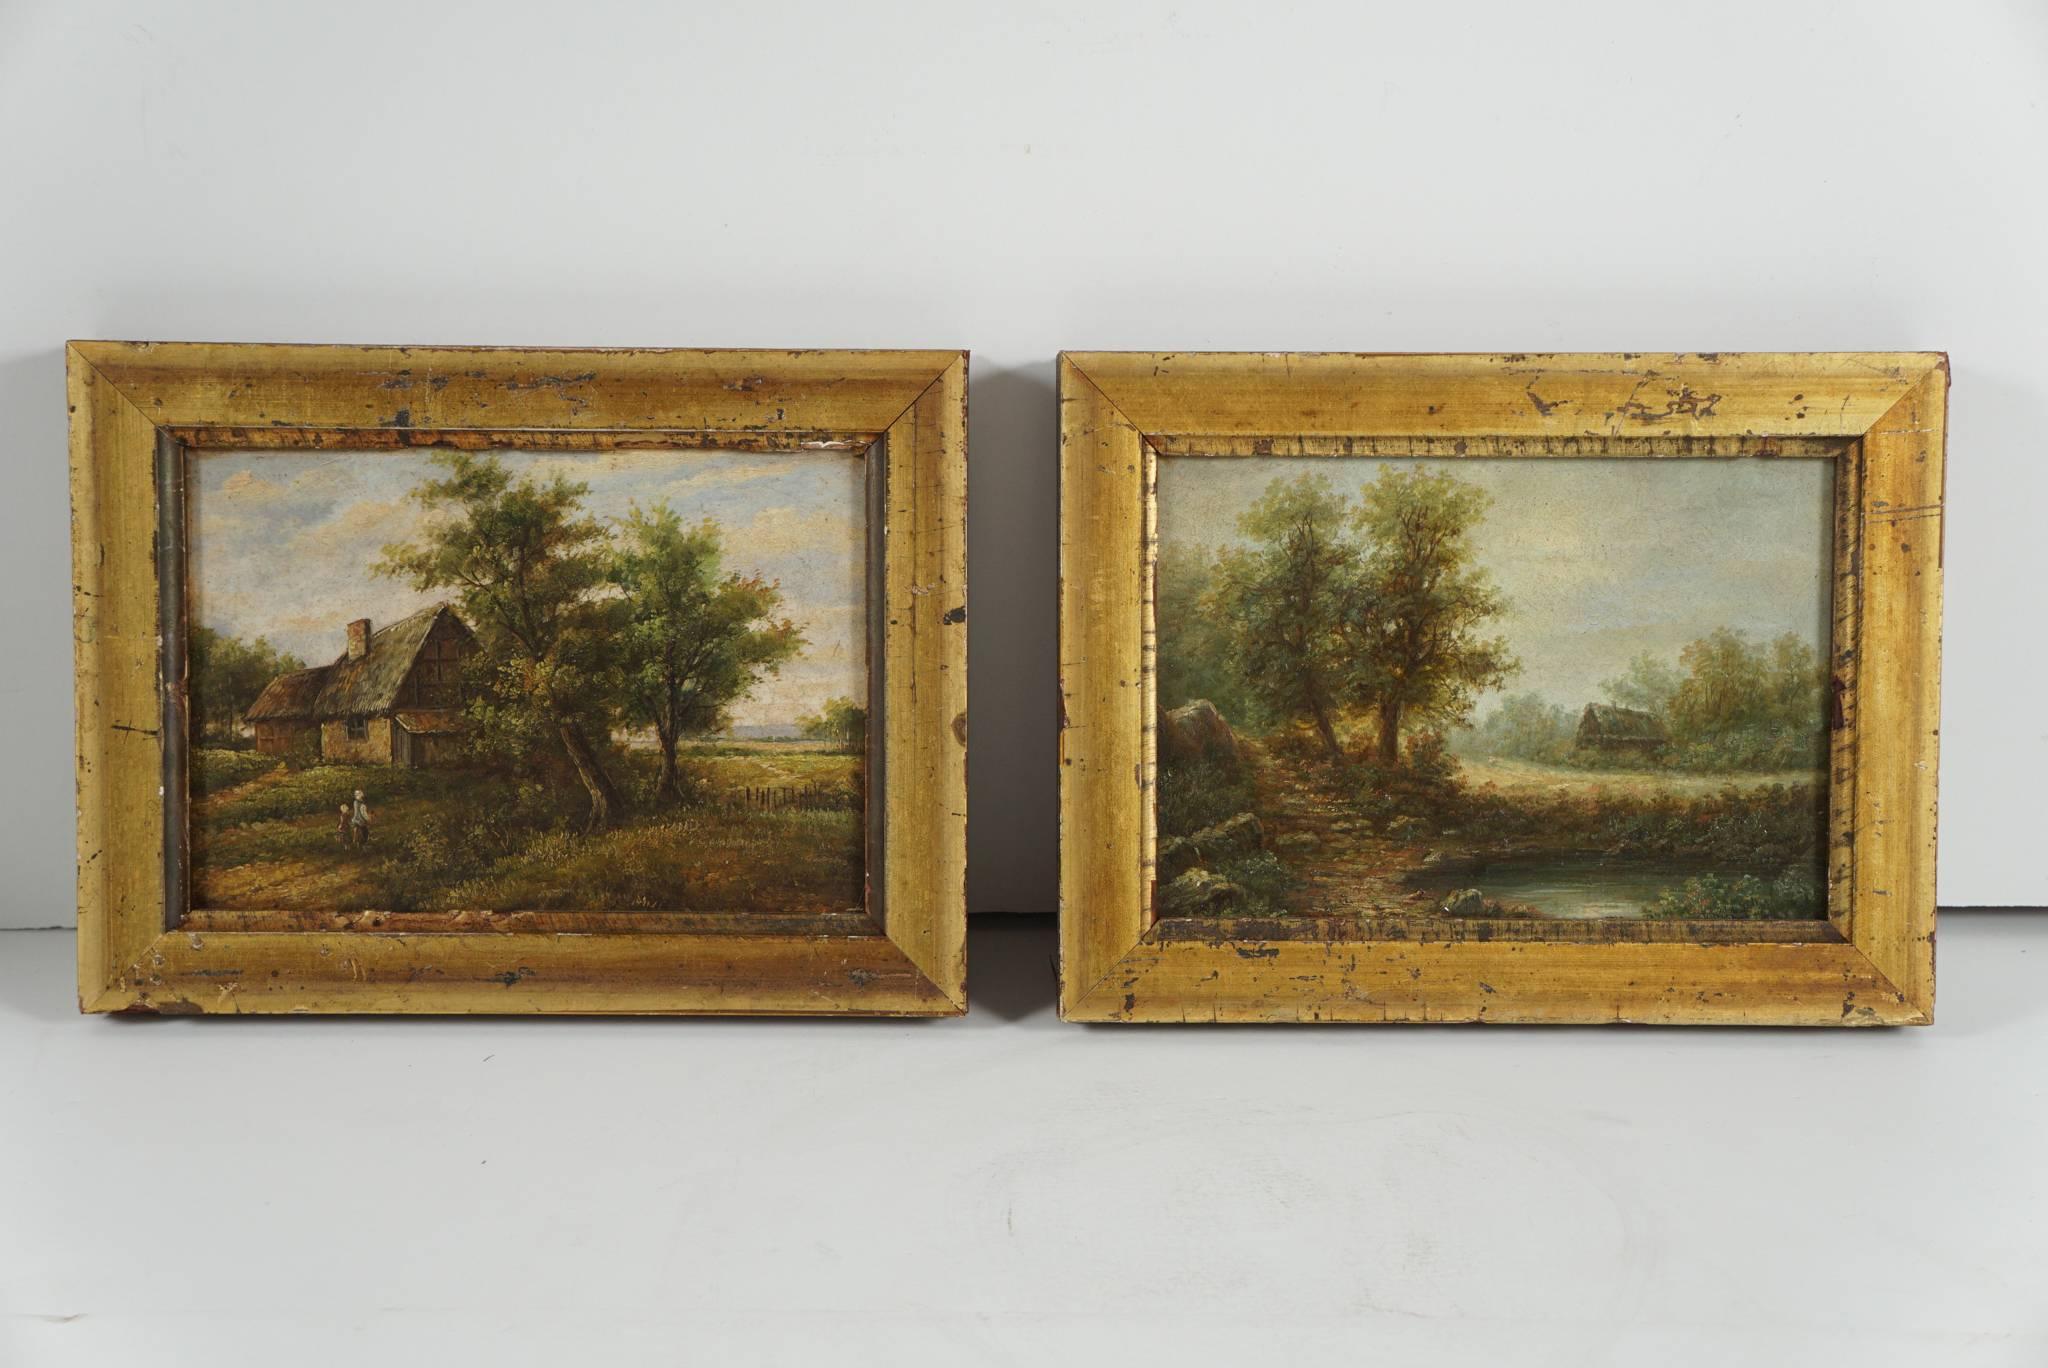 Ces scènes bucoliques de la vie rurale et de la vie à la ferme proviennent probablement de peintres allemands ou autrichiens et sont très probablement destinées à être une paire, vers 1850-1860. Les œuvres sont très détaillées mais peintes à l'aide